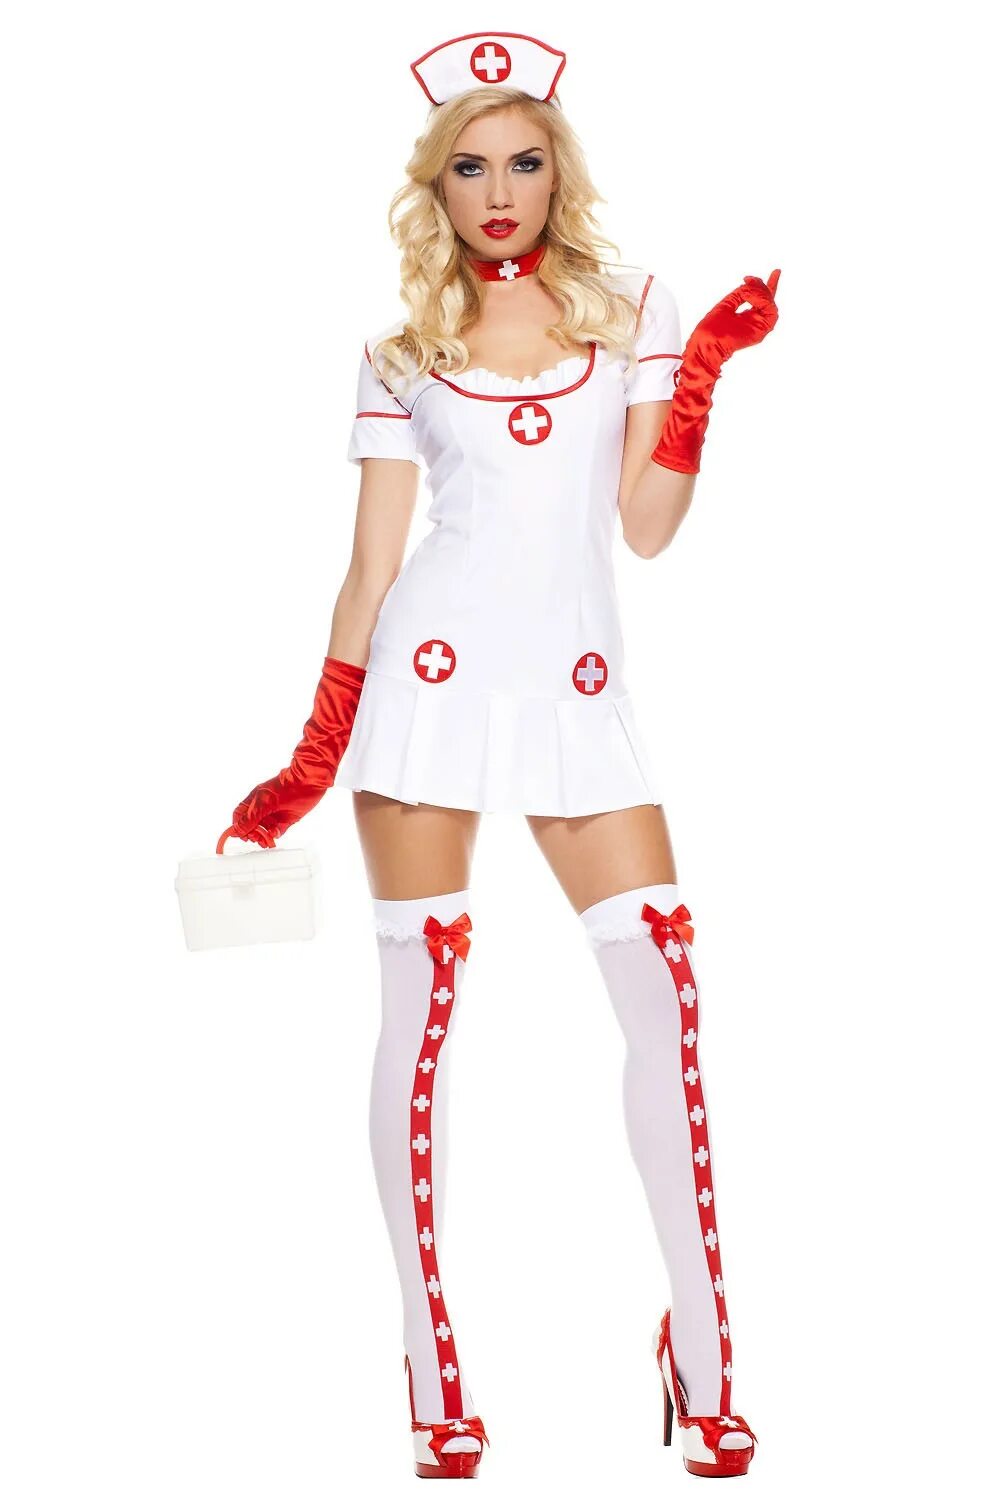 Купить костюм 18. Ролевые костюмы для женщин. Костюм медсестры. Образ медсестры для ролевых. Взрослый костюм медсестры.